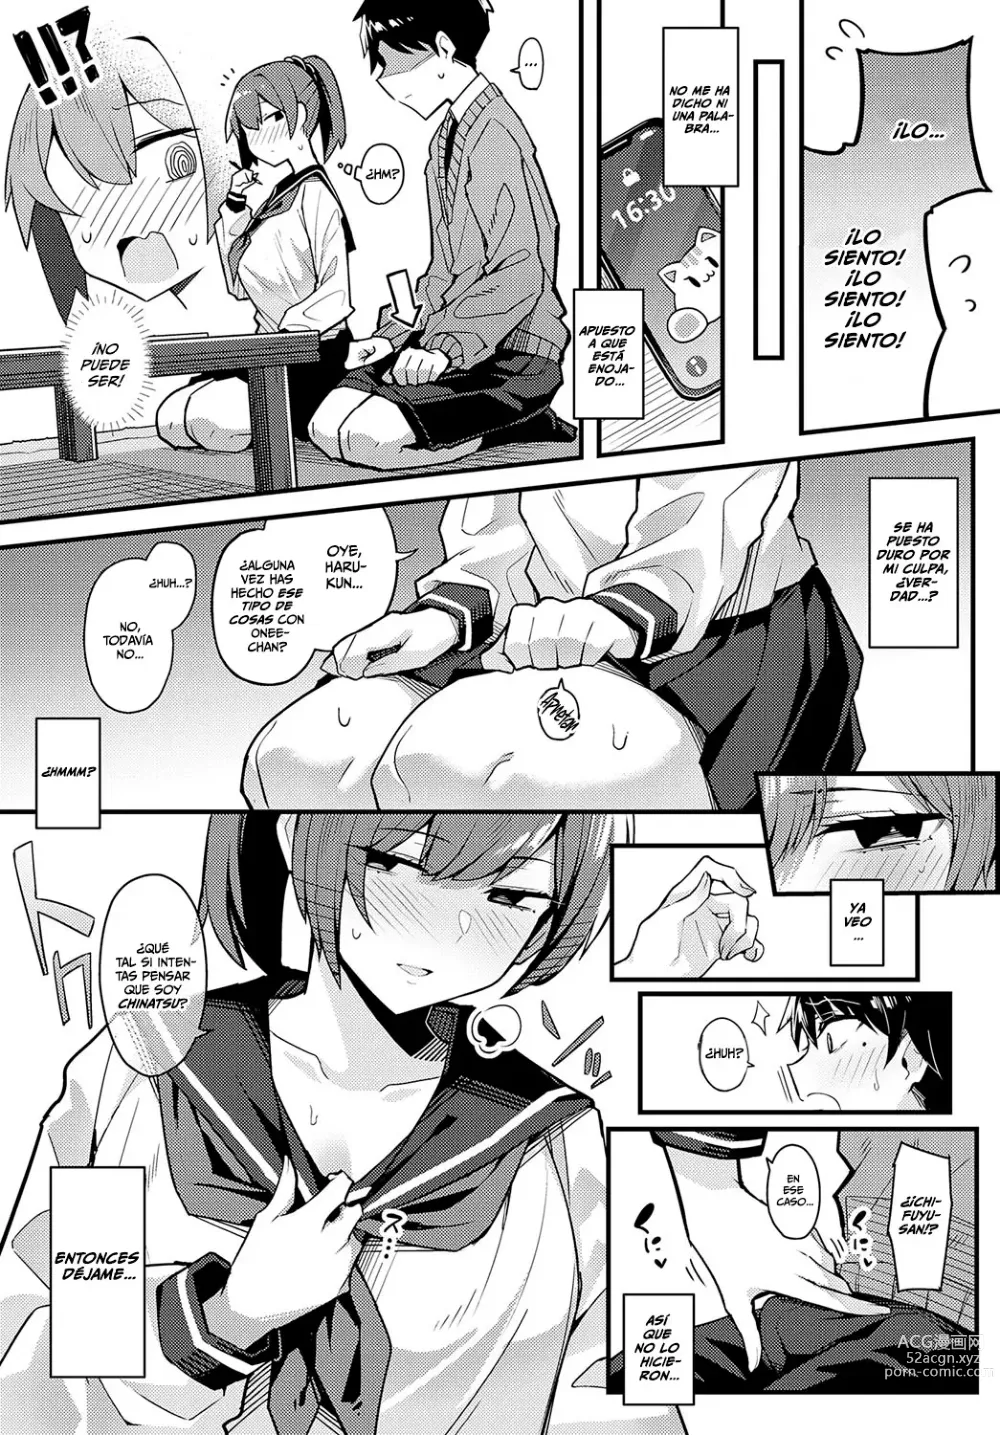 Page 7 of manga Solo Una Cosa